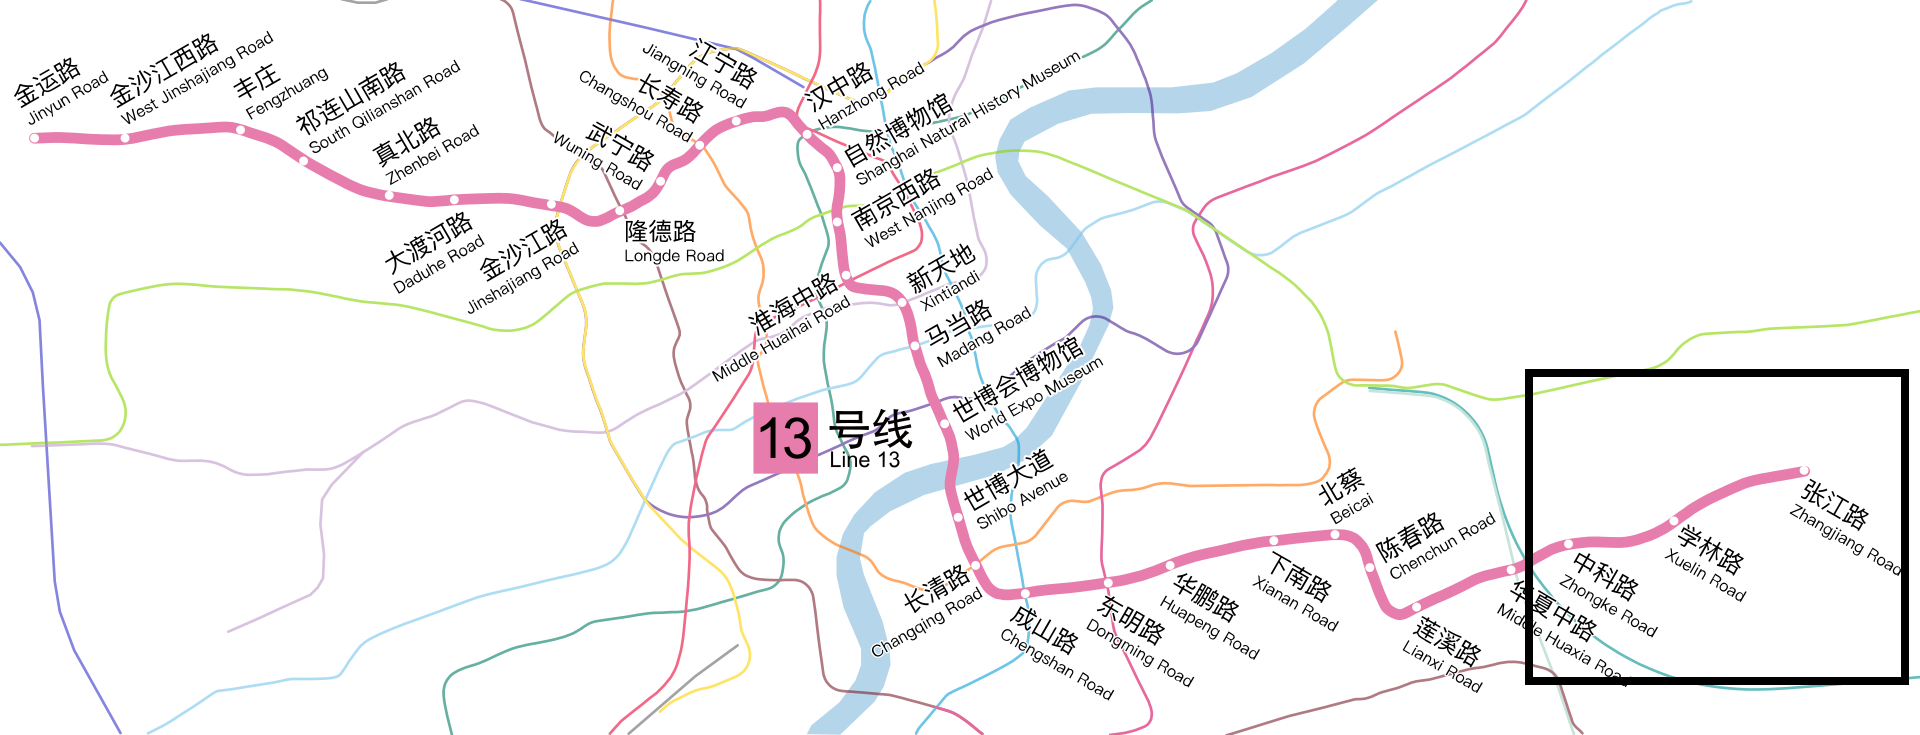 上海地铁13号线客流量稳步上涨:东段增加很迅速,西段还要延伸